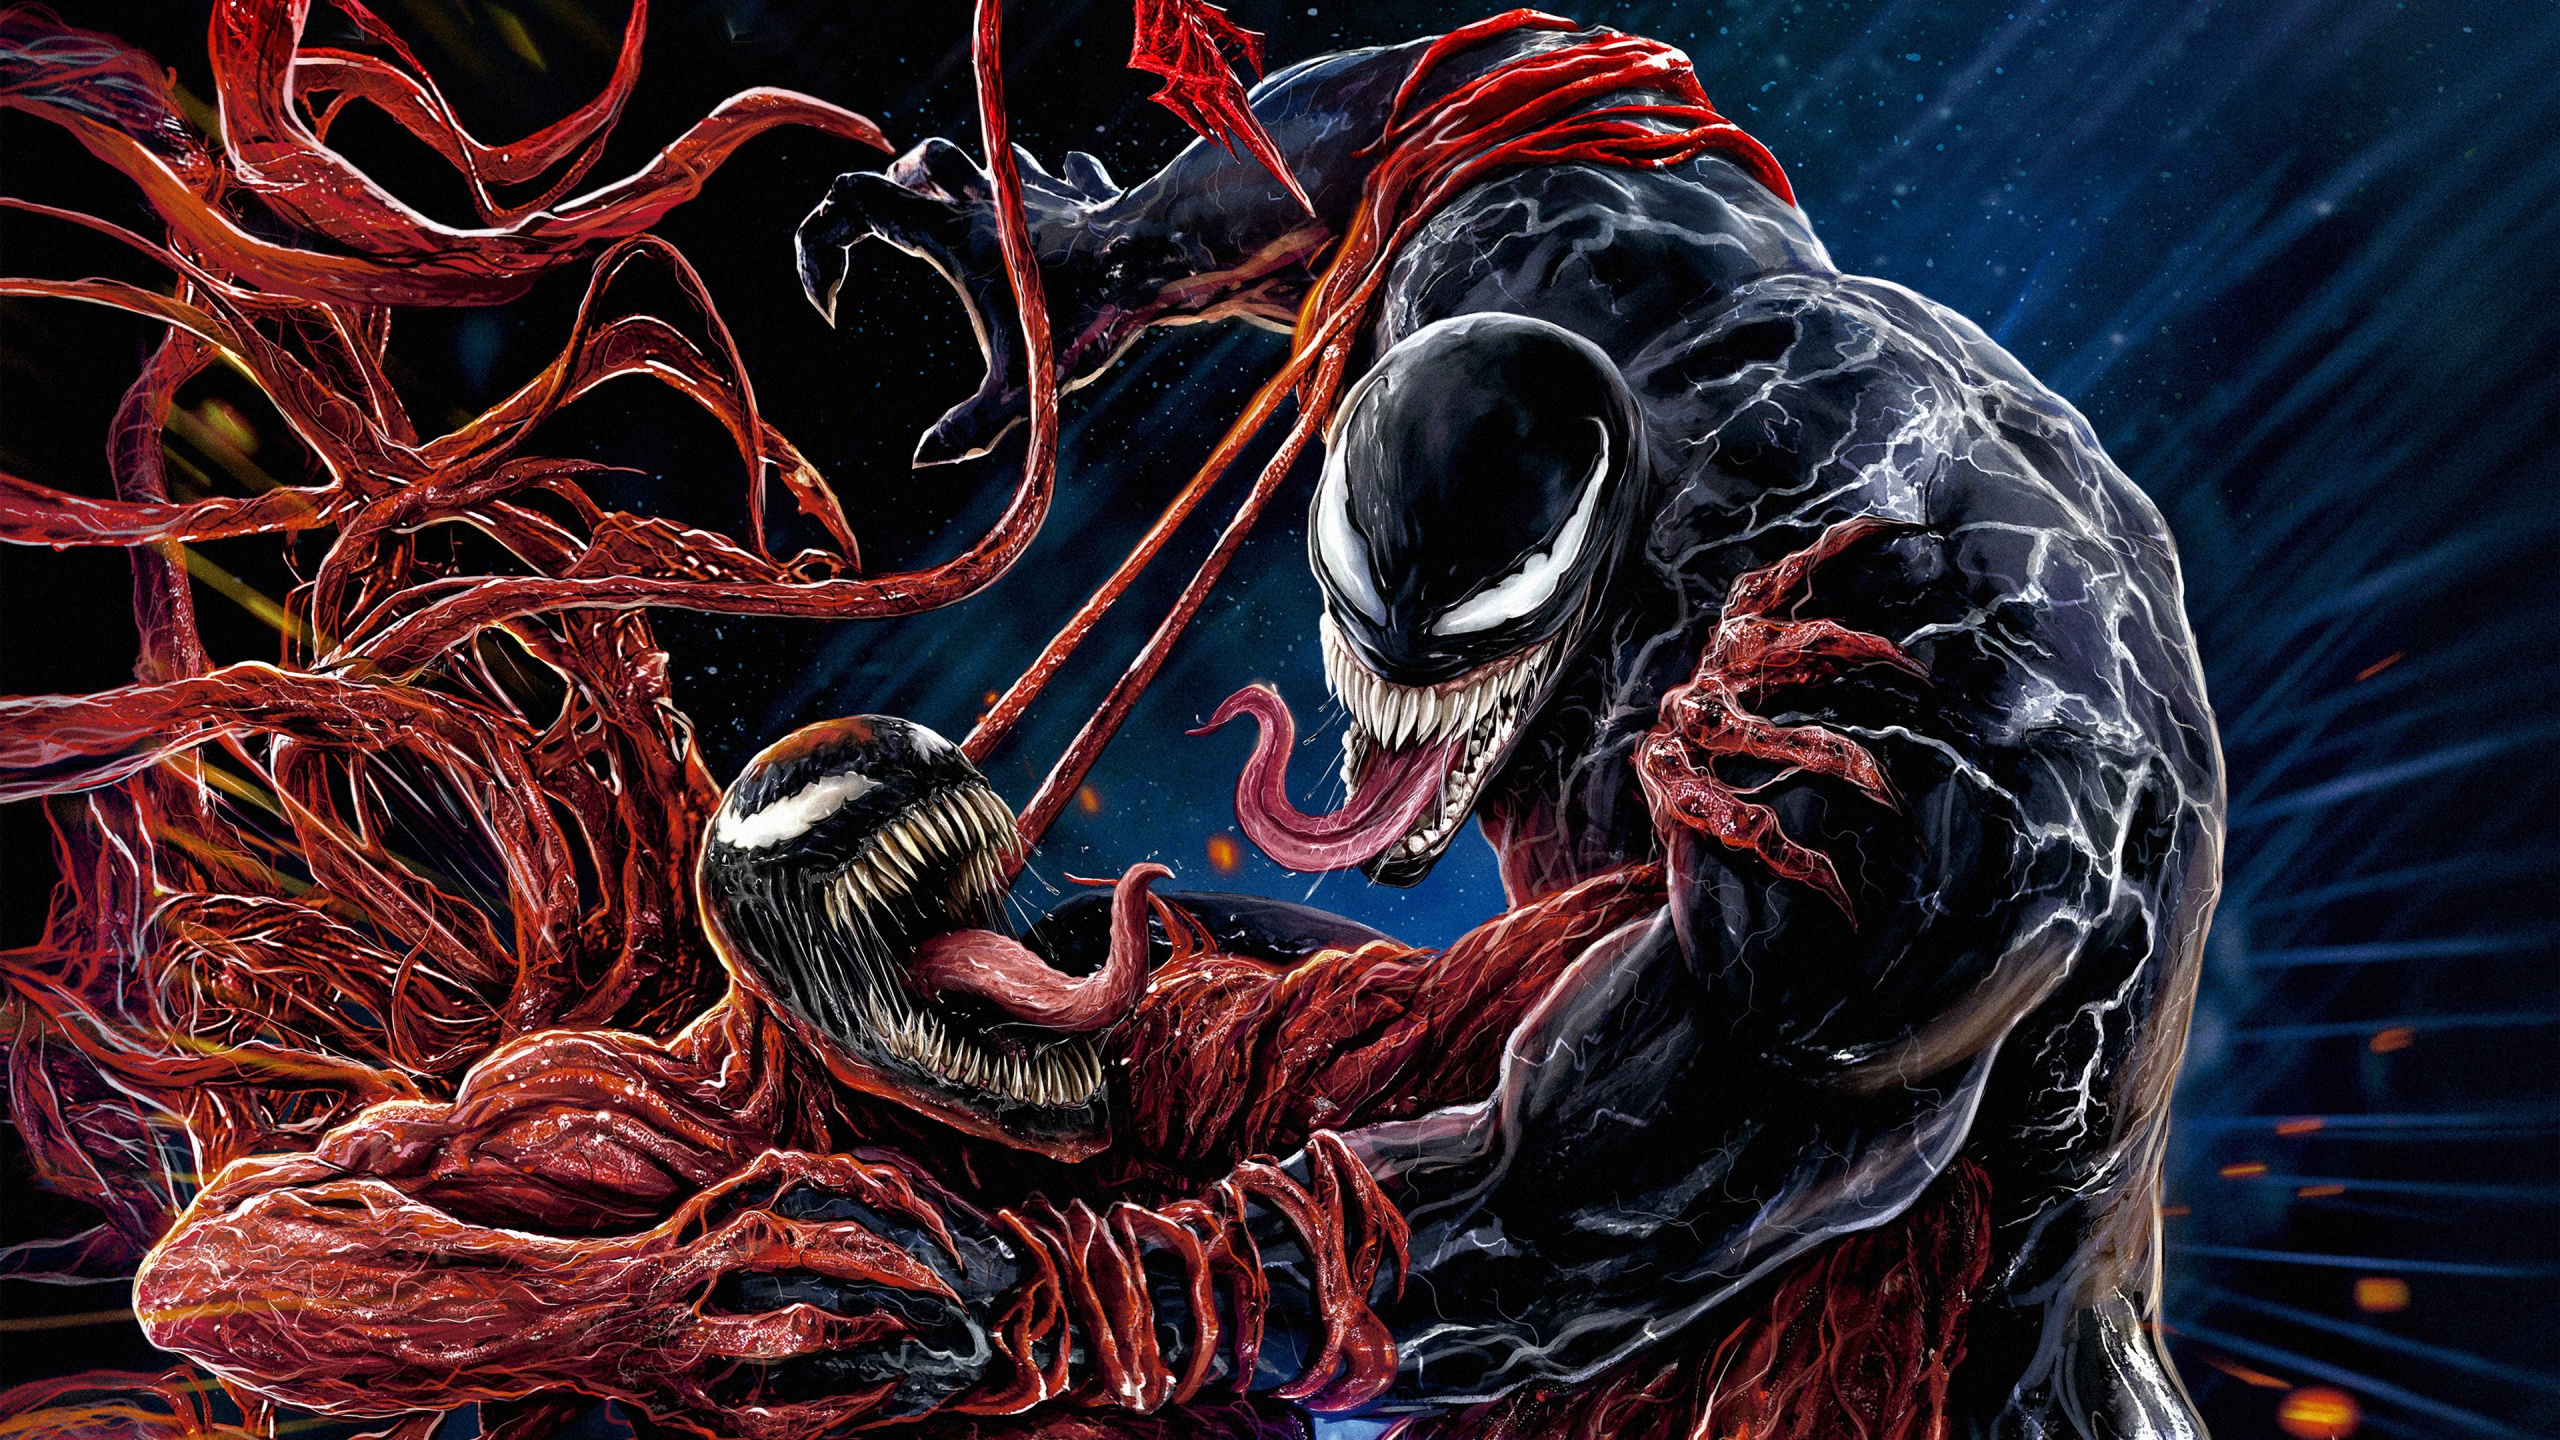 Chiếu rạp Let There Be Carnage với sự tham gia của Venom sẽ là một trải nghiệm không thể bỏ qua đối với các fan hâm mộ của Marvel. Với nội dung hấp dẫn và những pha hành động kịch tính, đây là bộ phim sẽ khiến bạn phải cảm thấy hào hứng và tò mò.